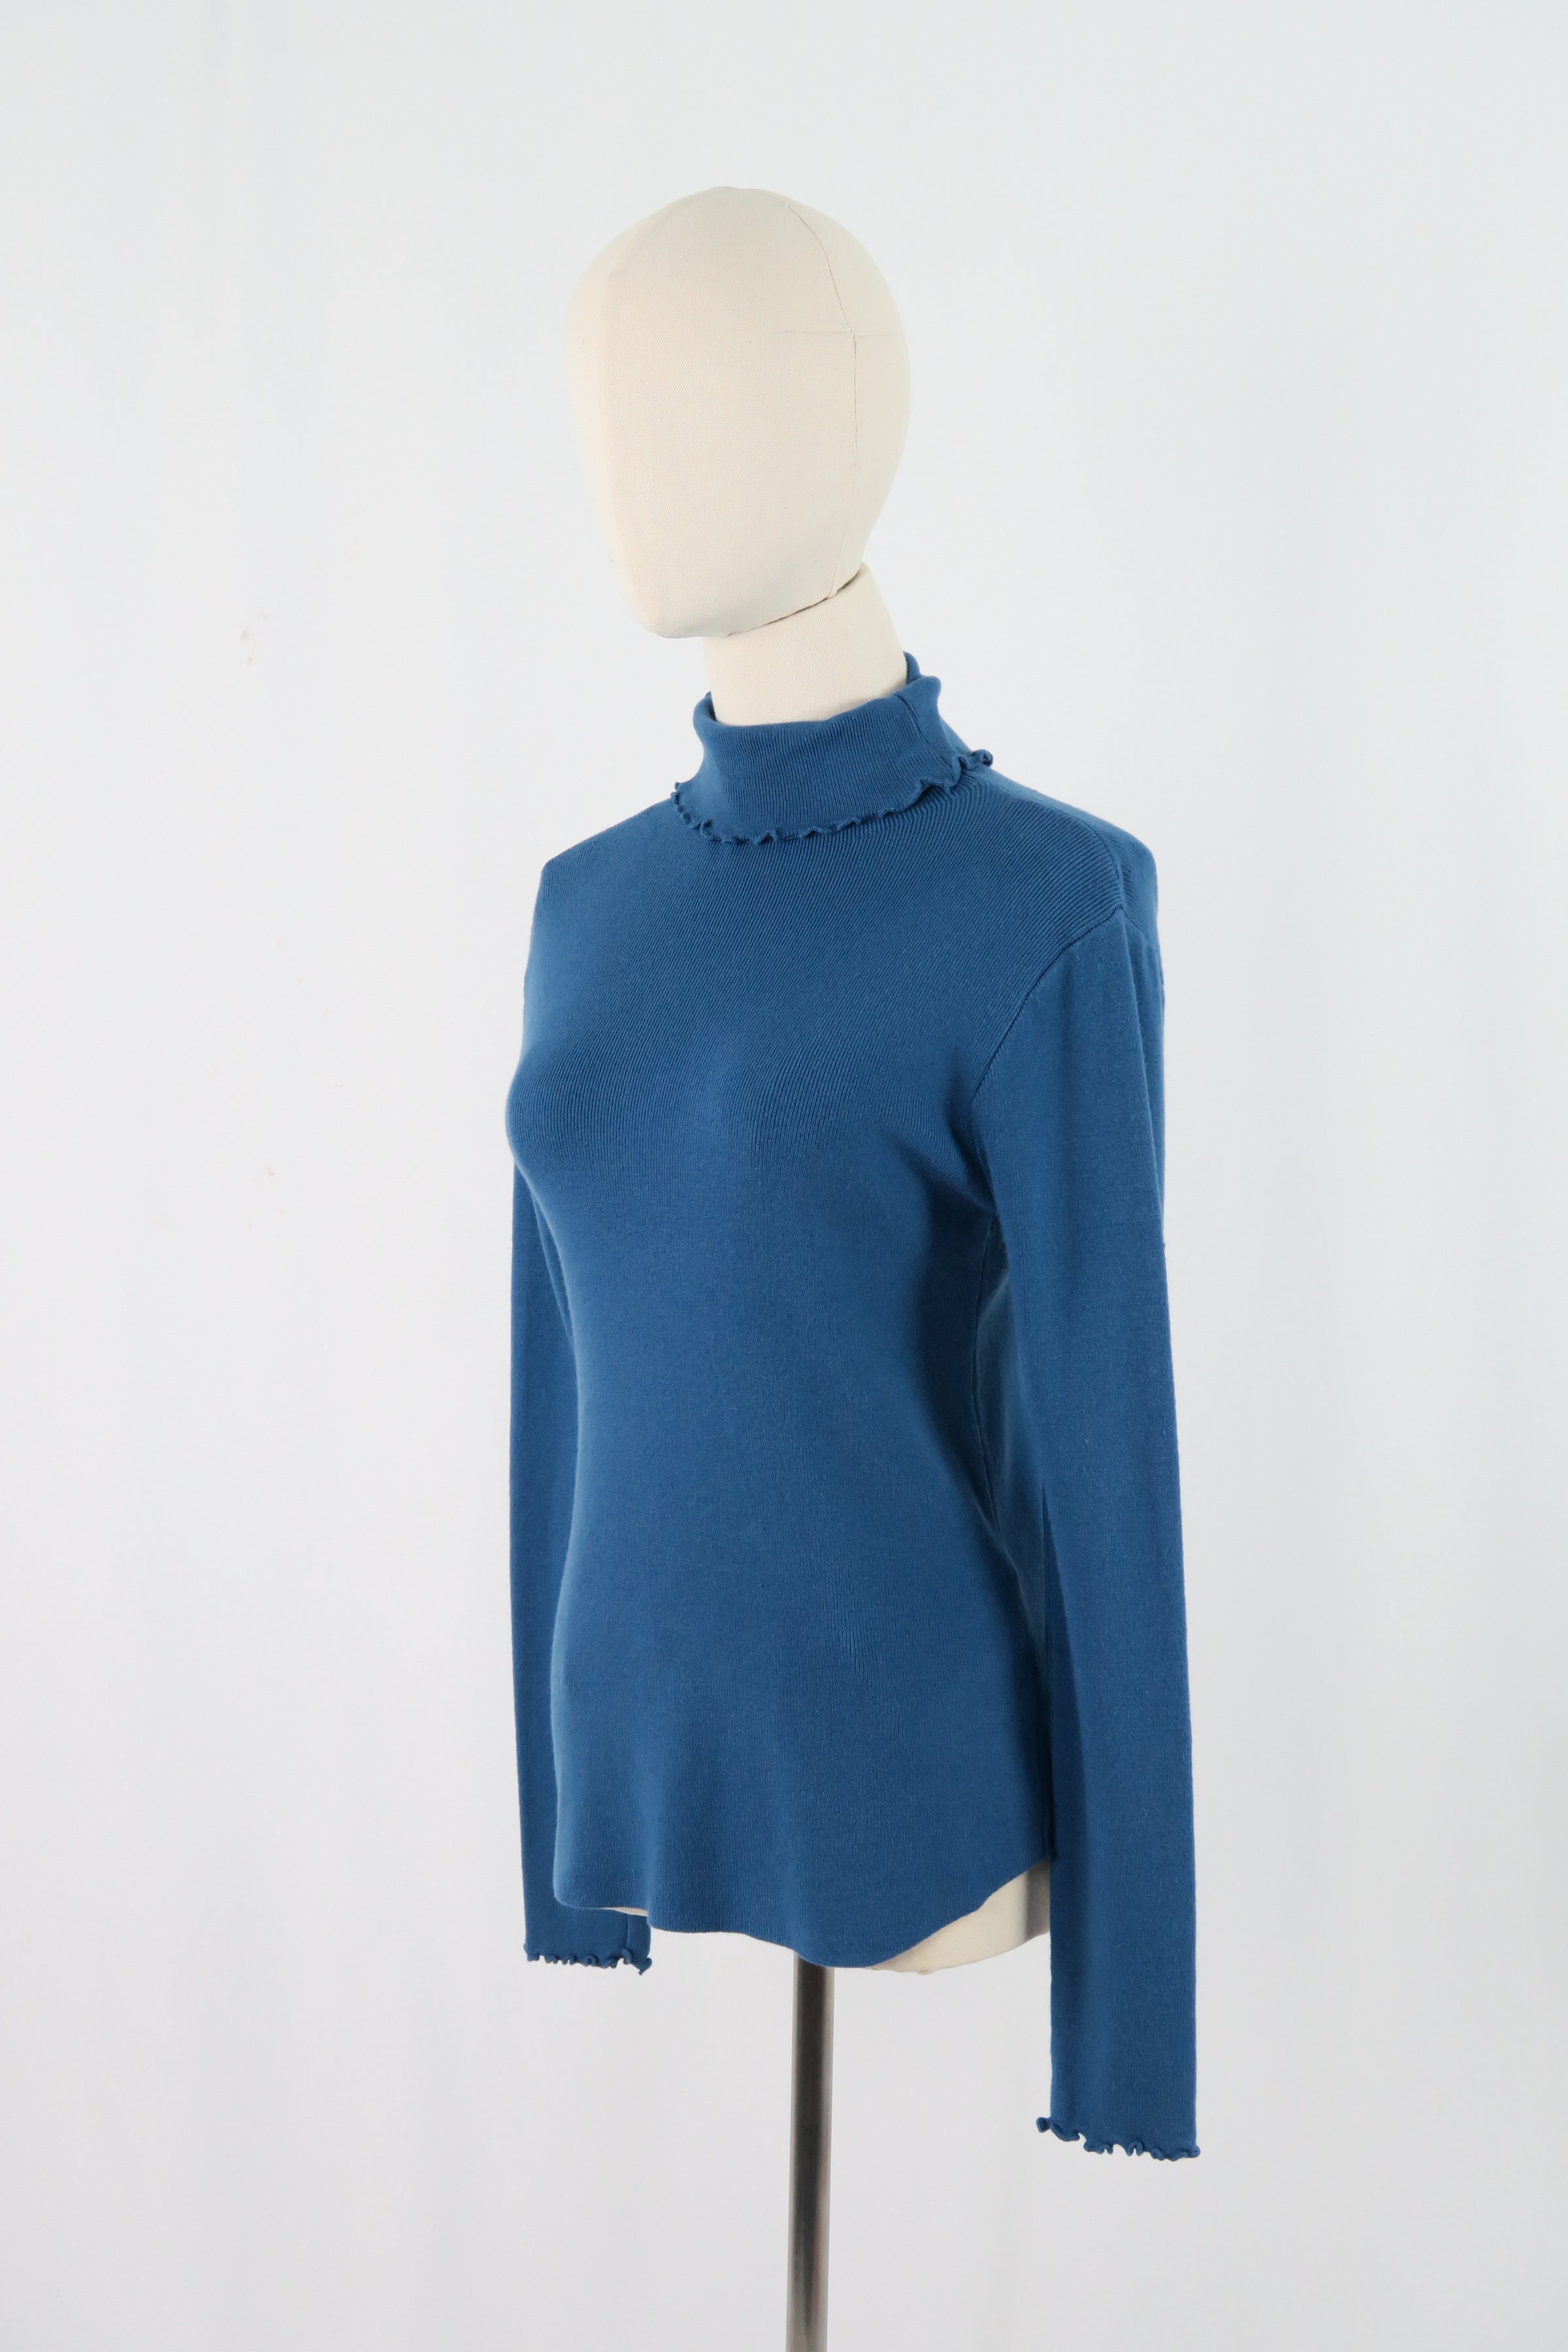 เสื้อไหมพรม เสื้อสเวตเตอร์ แขนยาว คอเต่า - Women's Basic Round Neck Side Split Loose Long Sleeve Knit Sweater